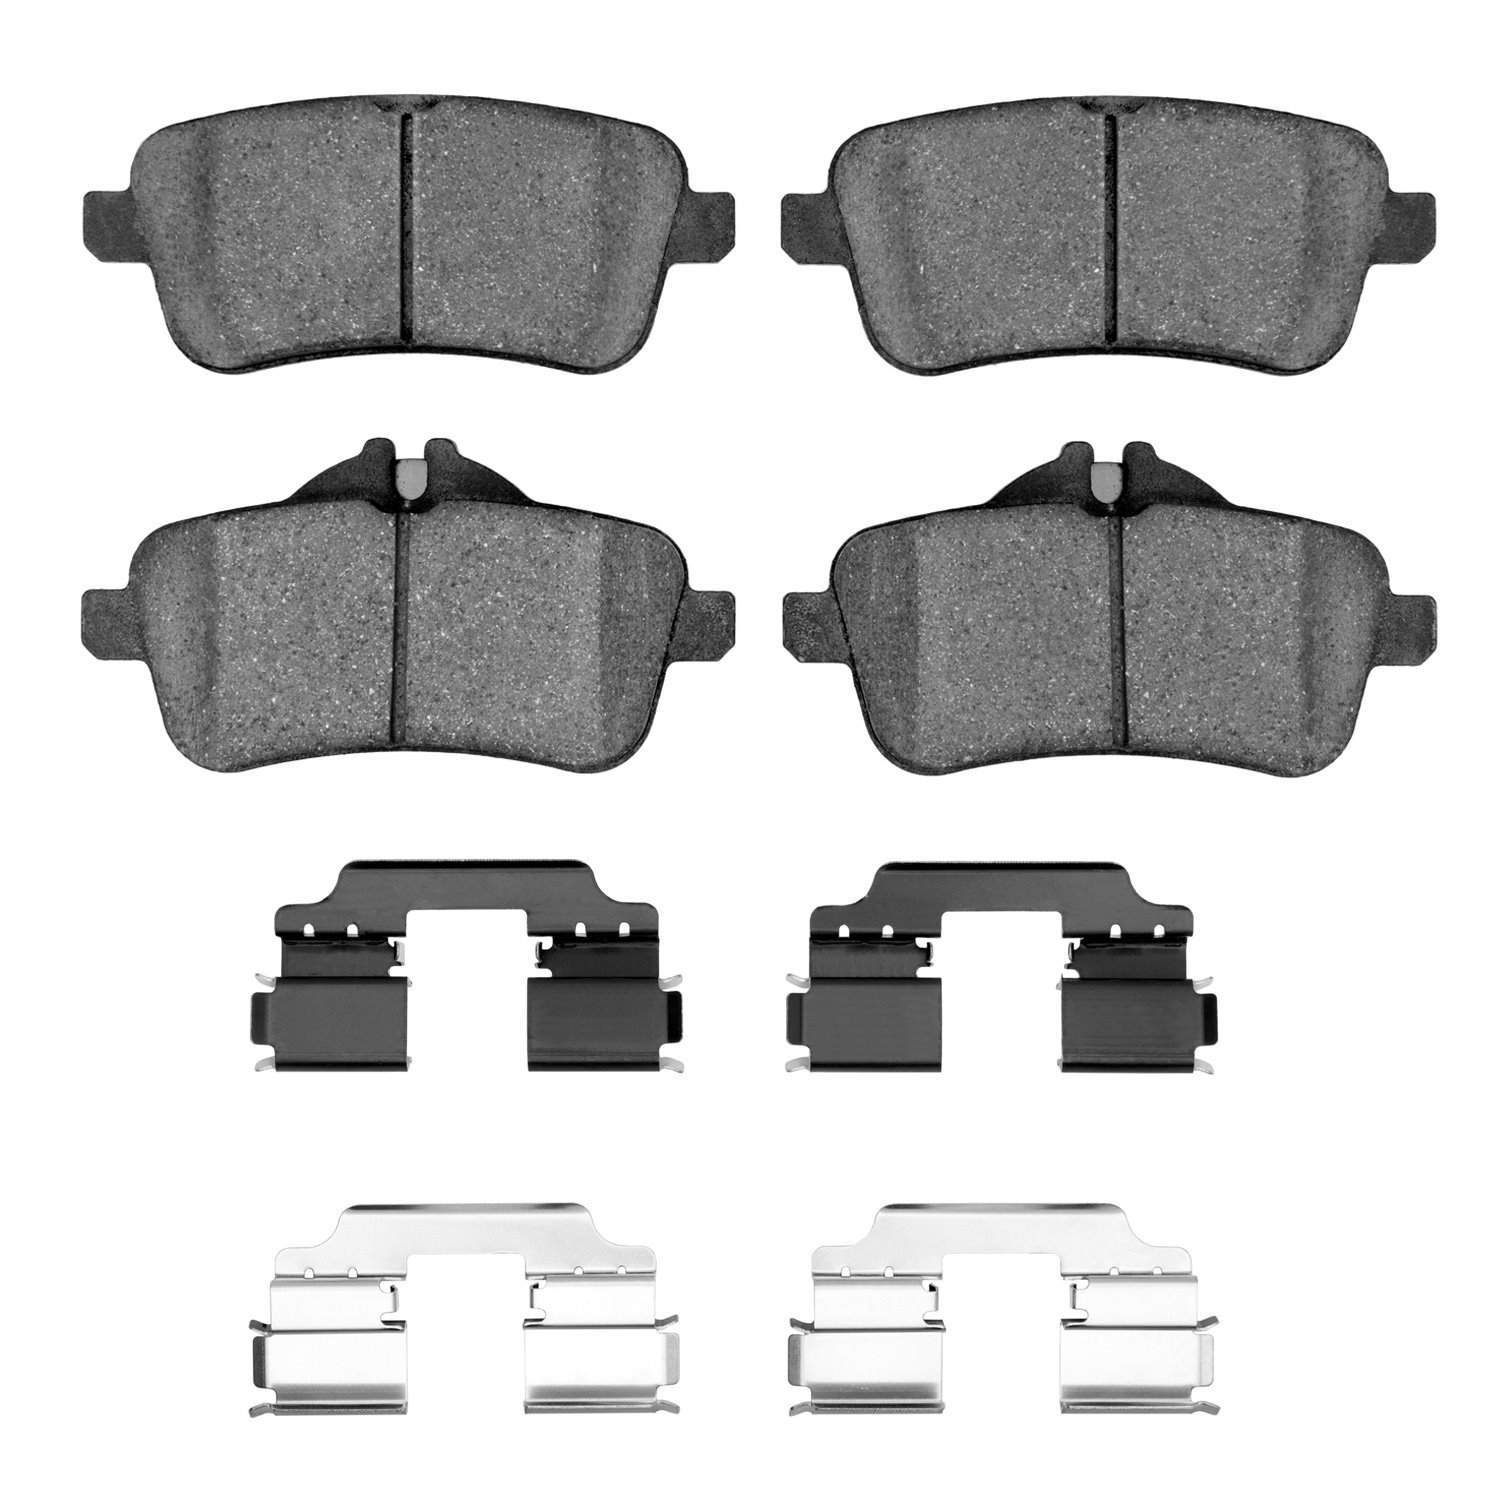 Euro Ceramic Brake Pads & Hardware Kit, 2012-2018 Mercedes-Benz, Position: Rear